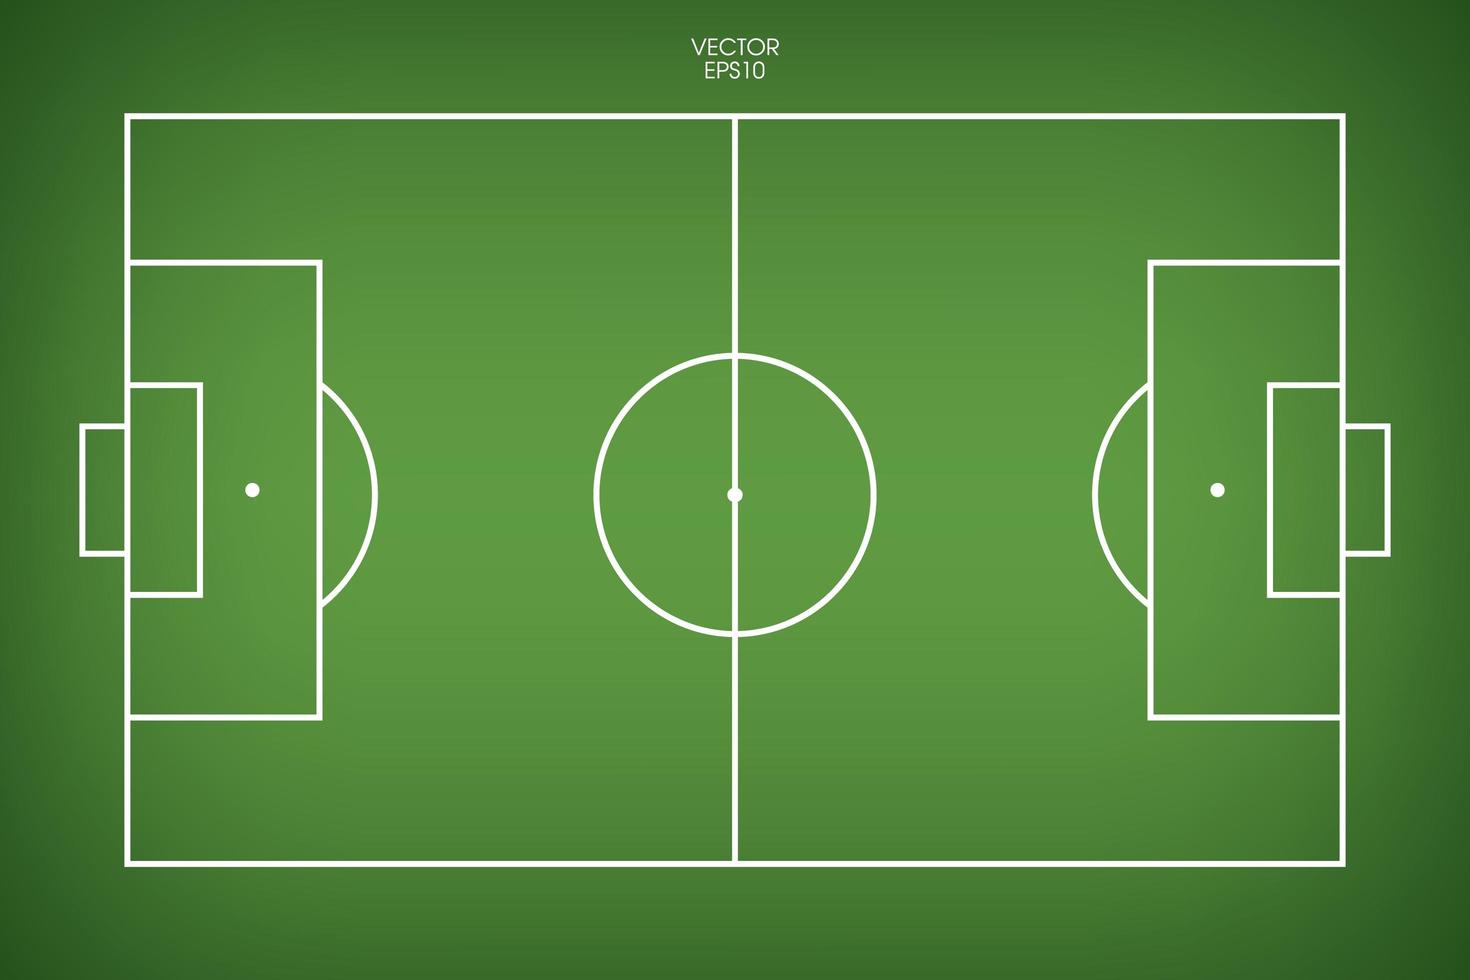 fotbollsplan eller fotbollsplan bakgrund. grönt gräsplan för att skapa fotbollsmatch. vektor. vektor